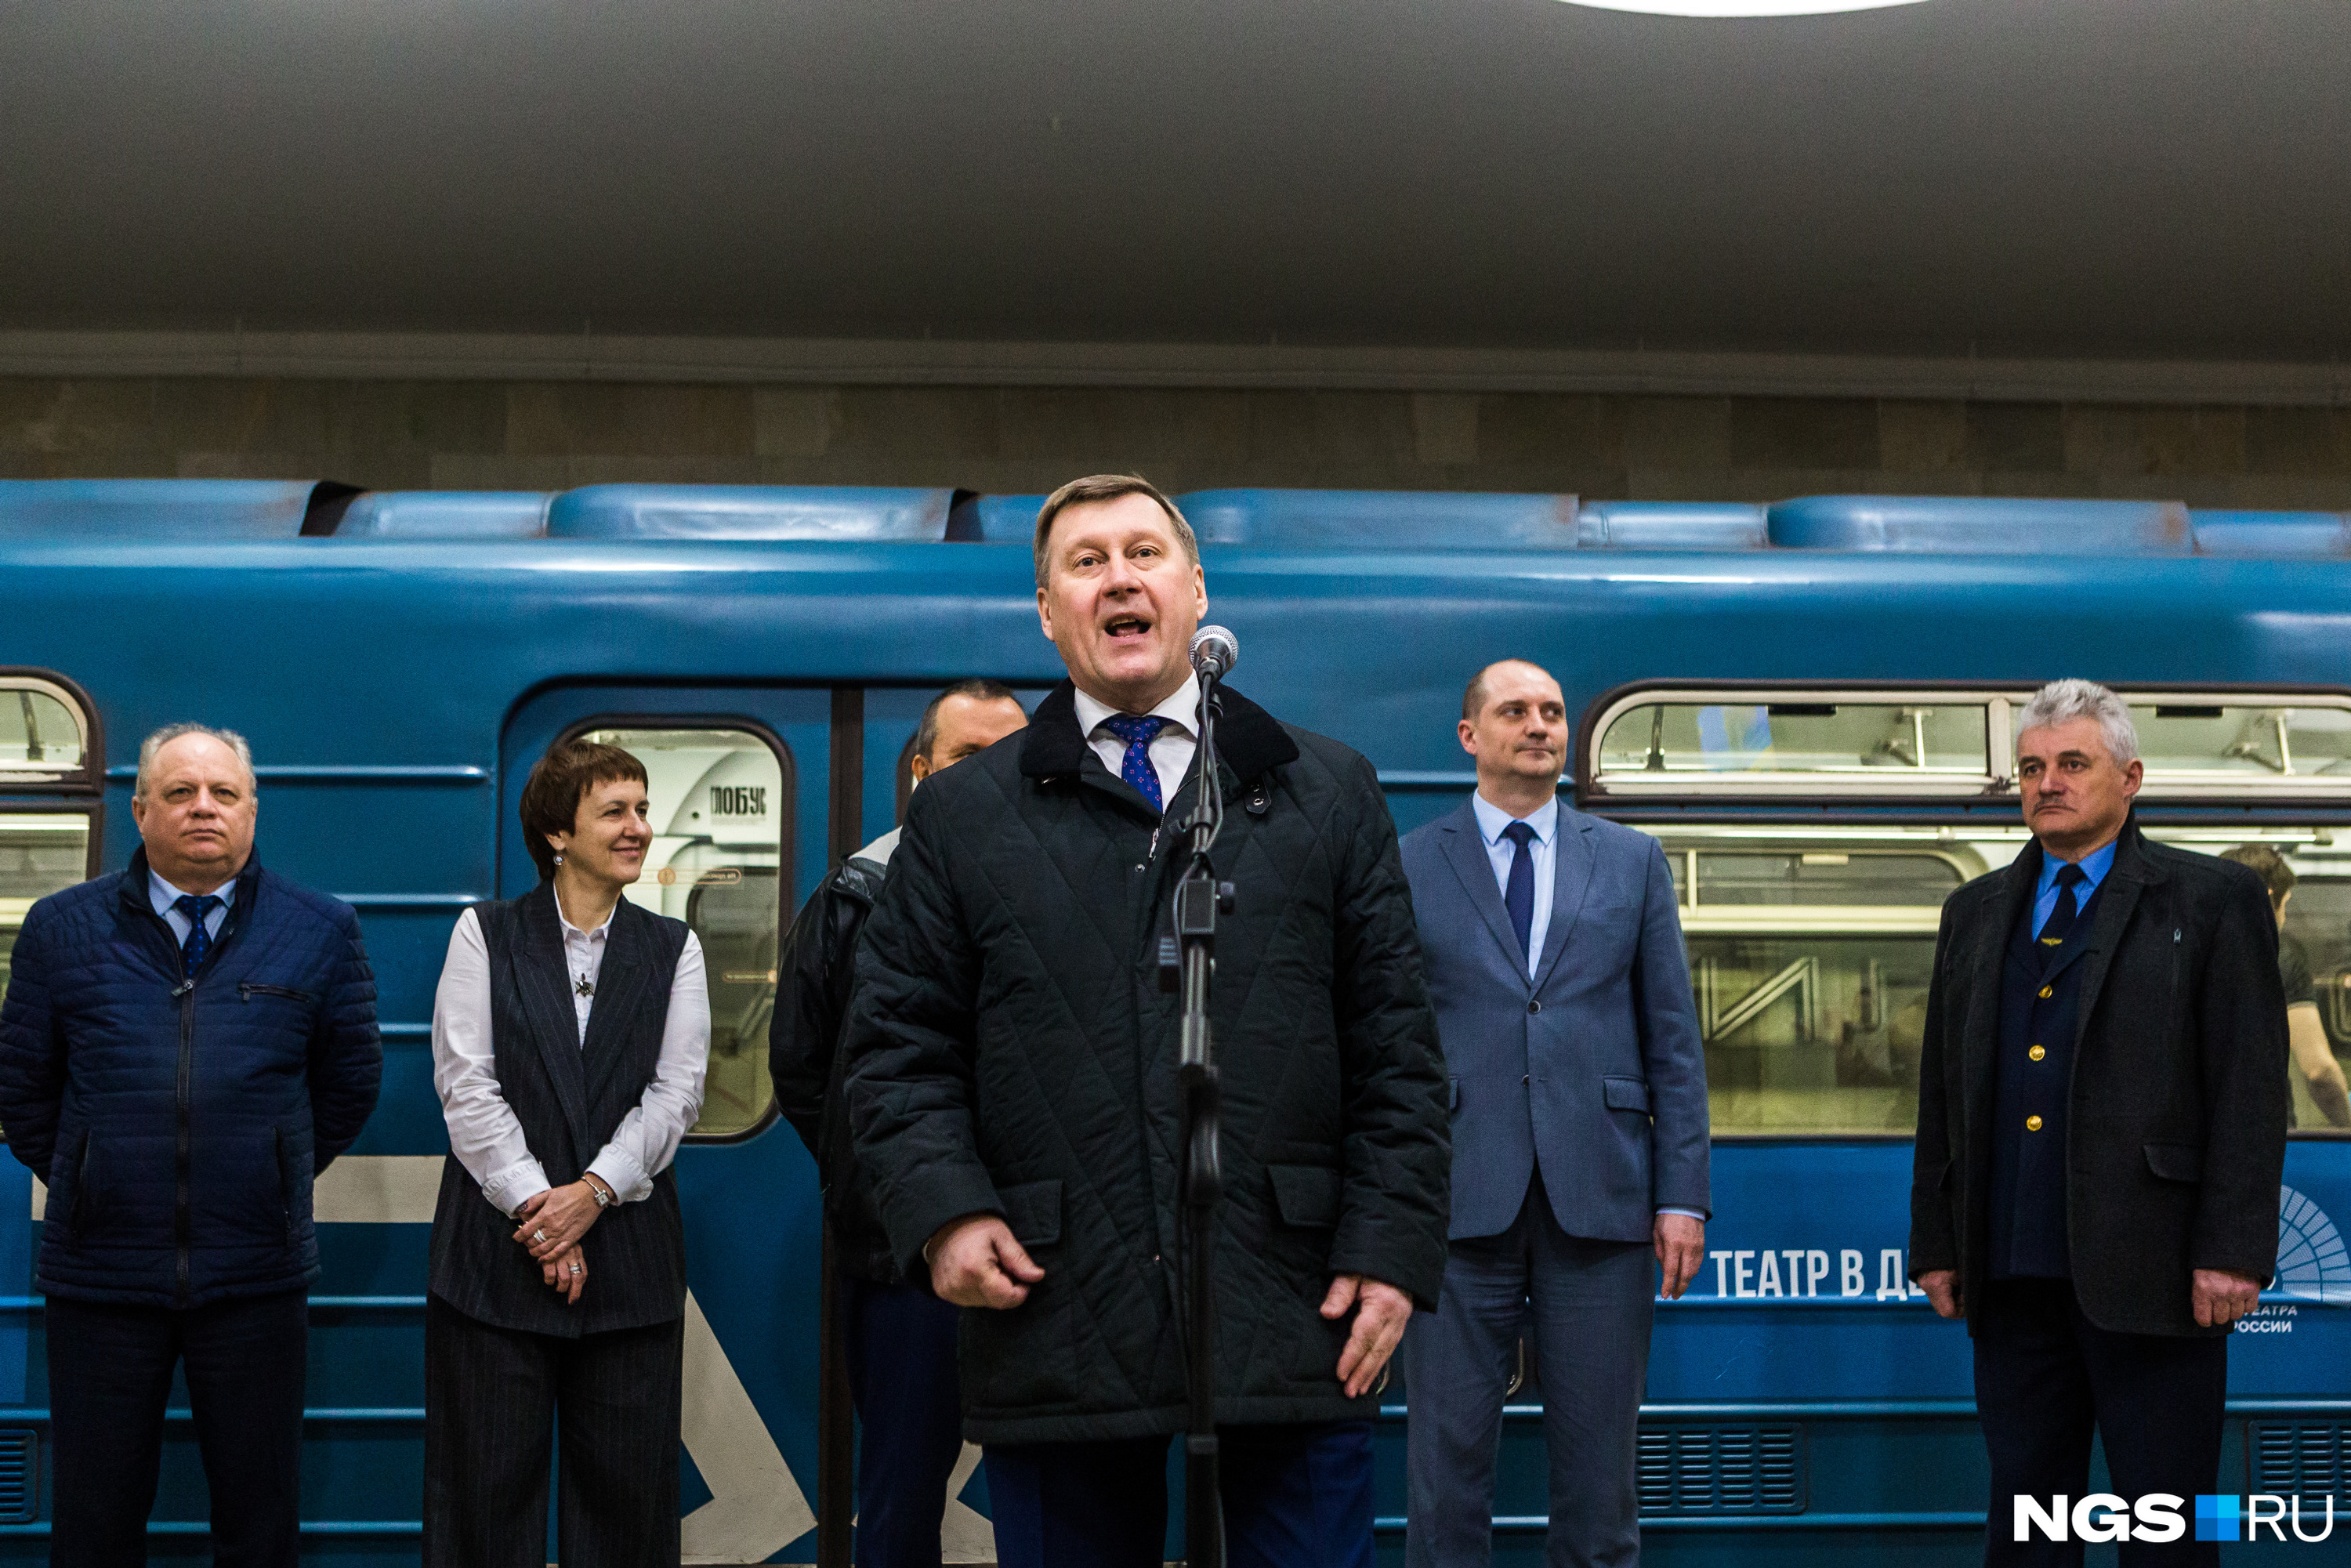 Мэр Новосибирска спустился в метро по случаю запуска нового вагона